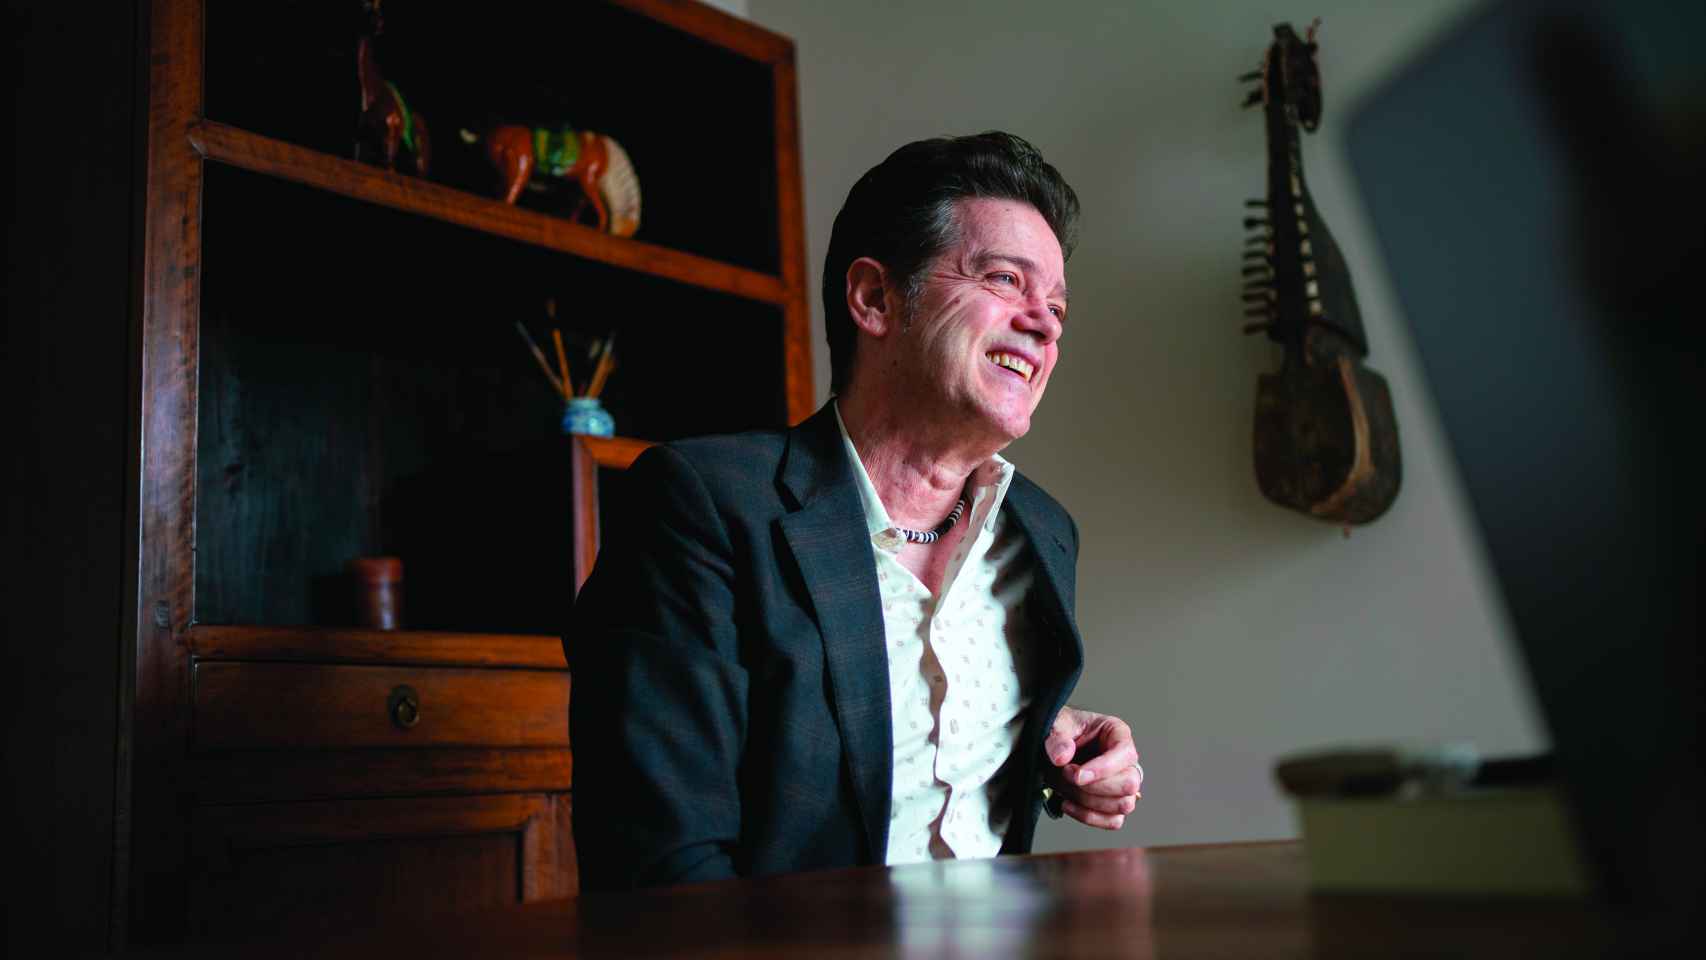 Auserón durante la entrevista, en el salón de su casa. Foto: Silvia P. Cabeza